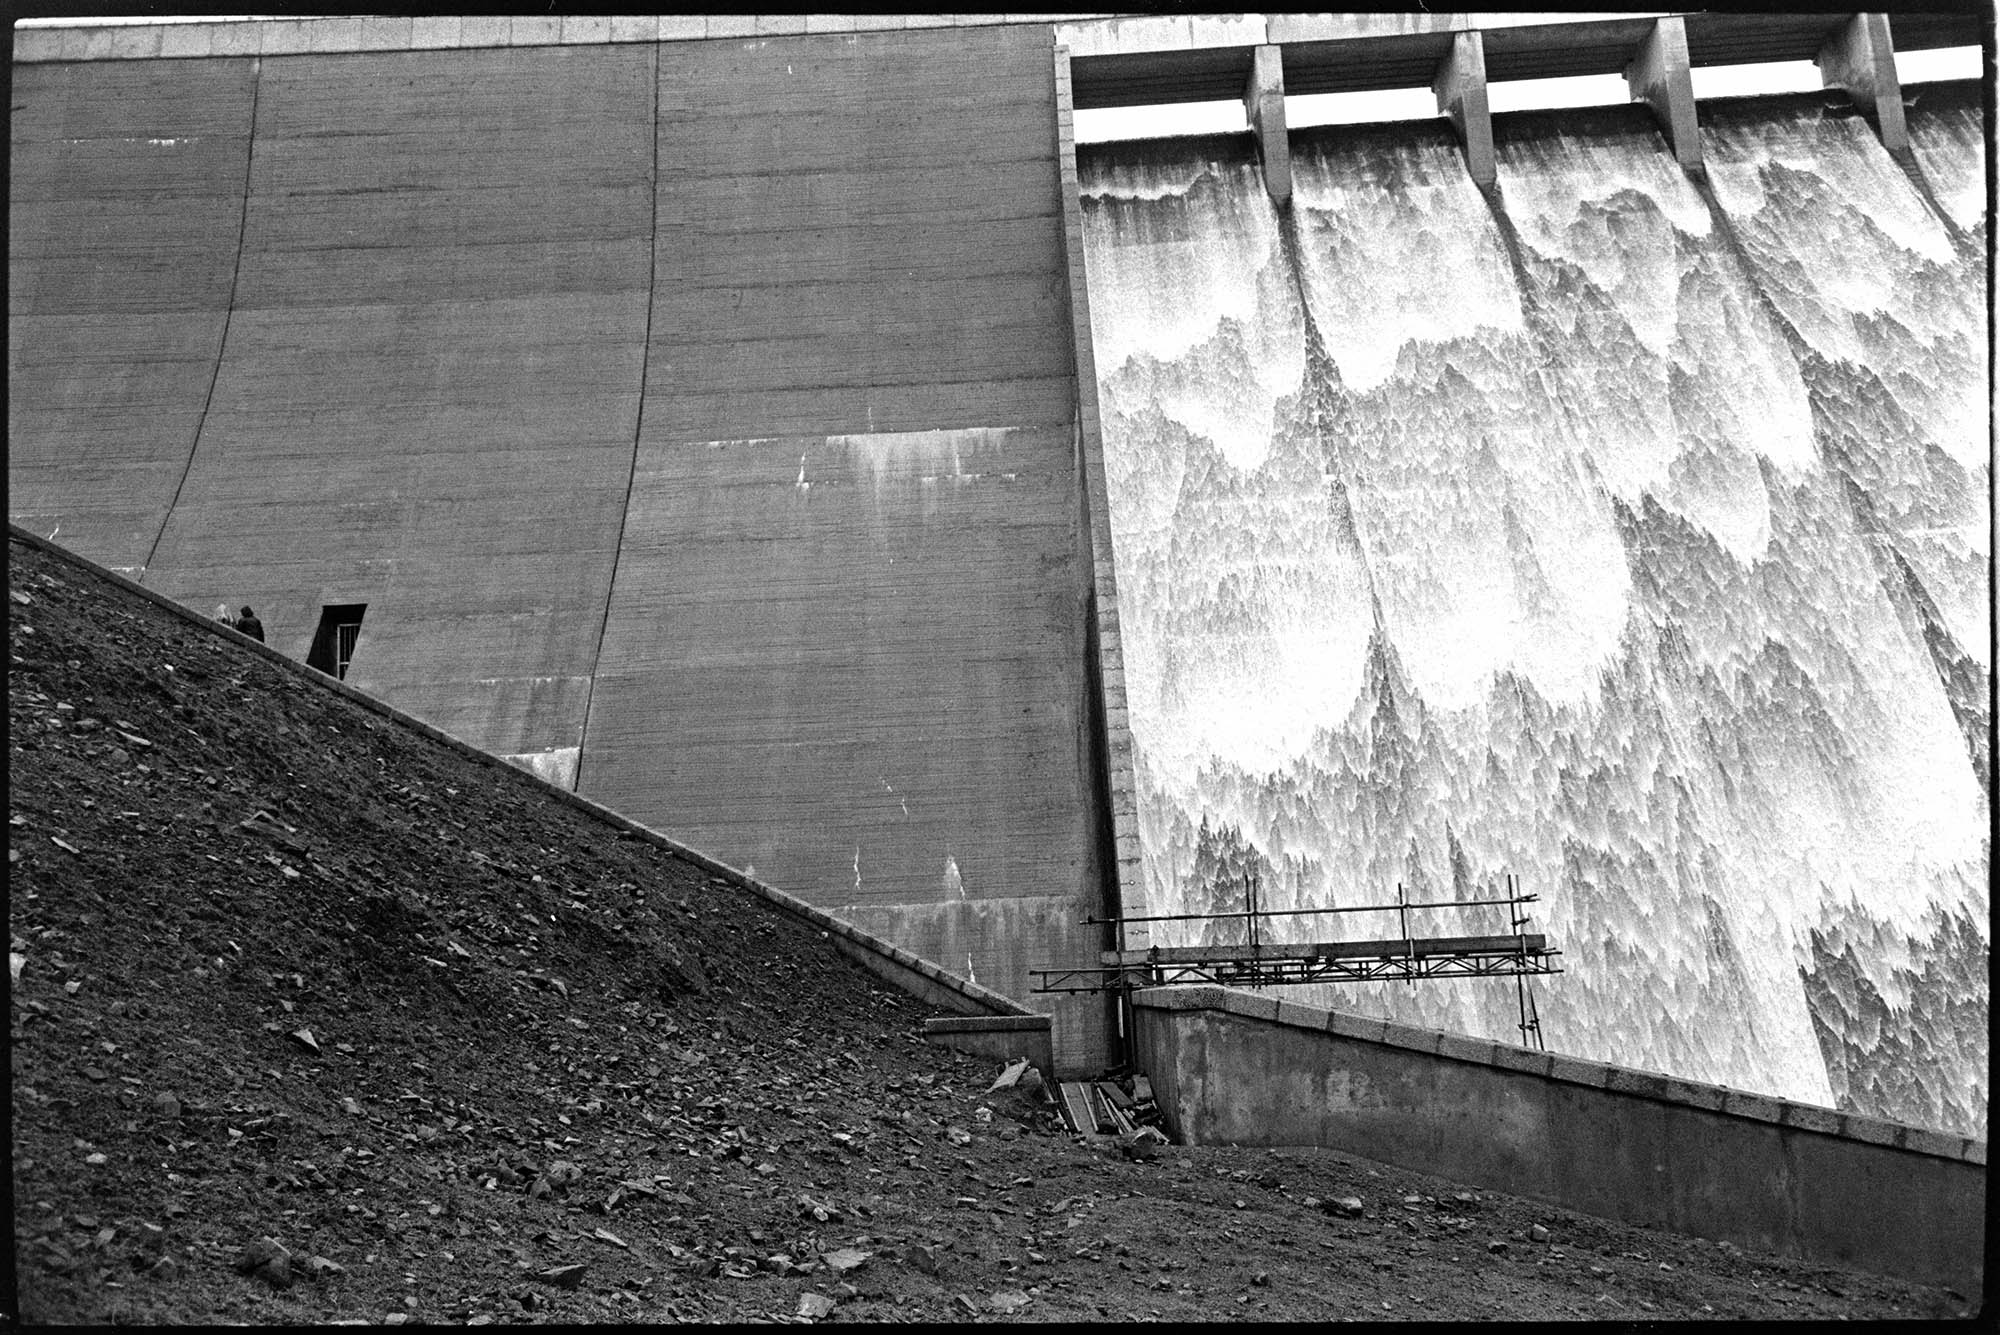 Water cascading over reservoir wall, Meldon.